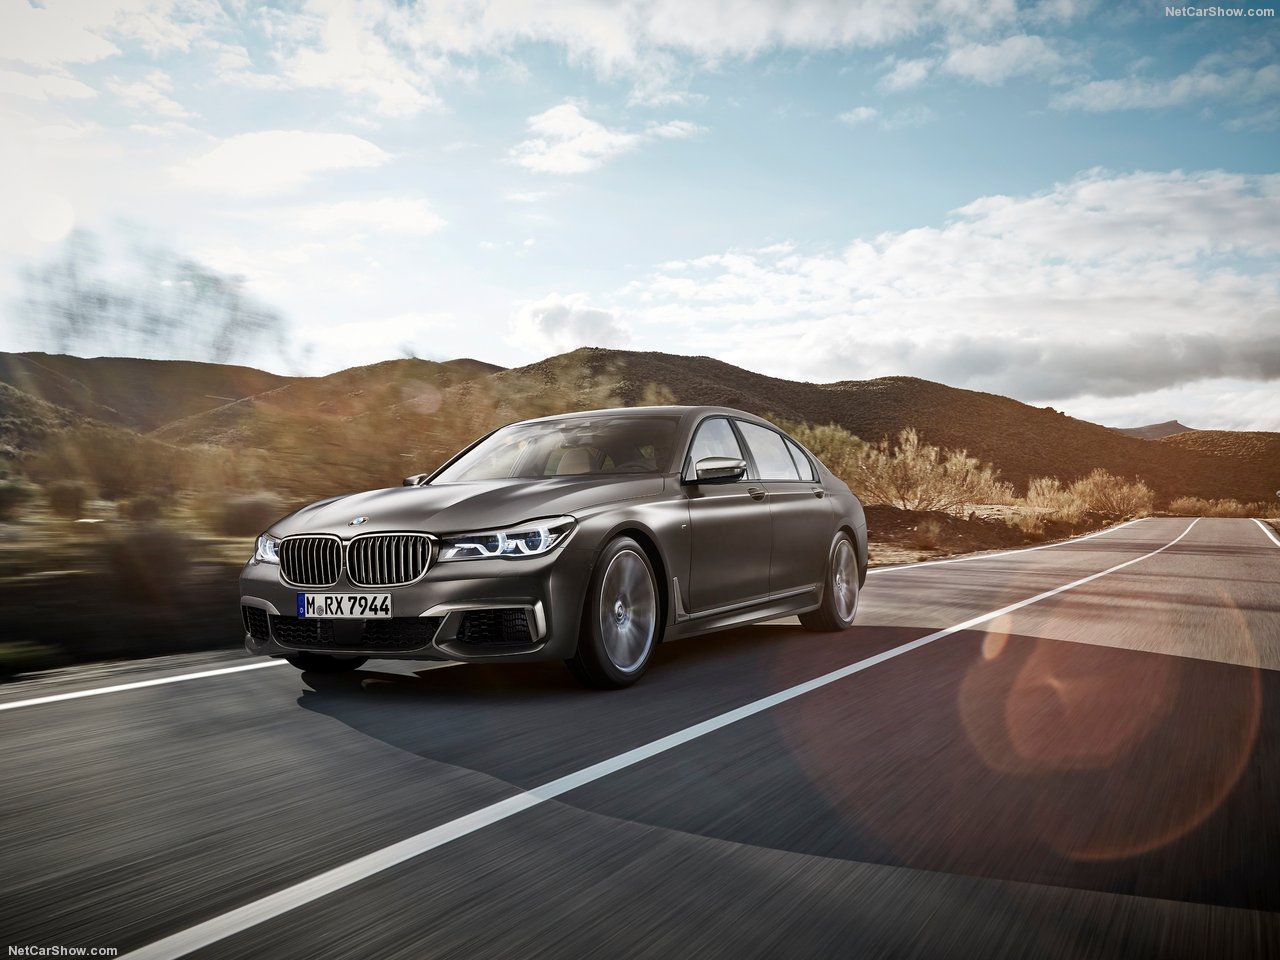 2017 BMW X5 будет использовать новую платформу CLAR от 7-й серии